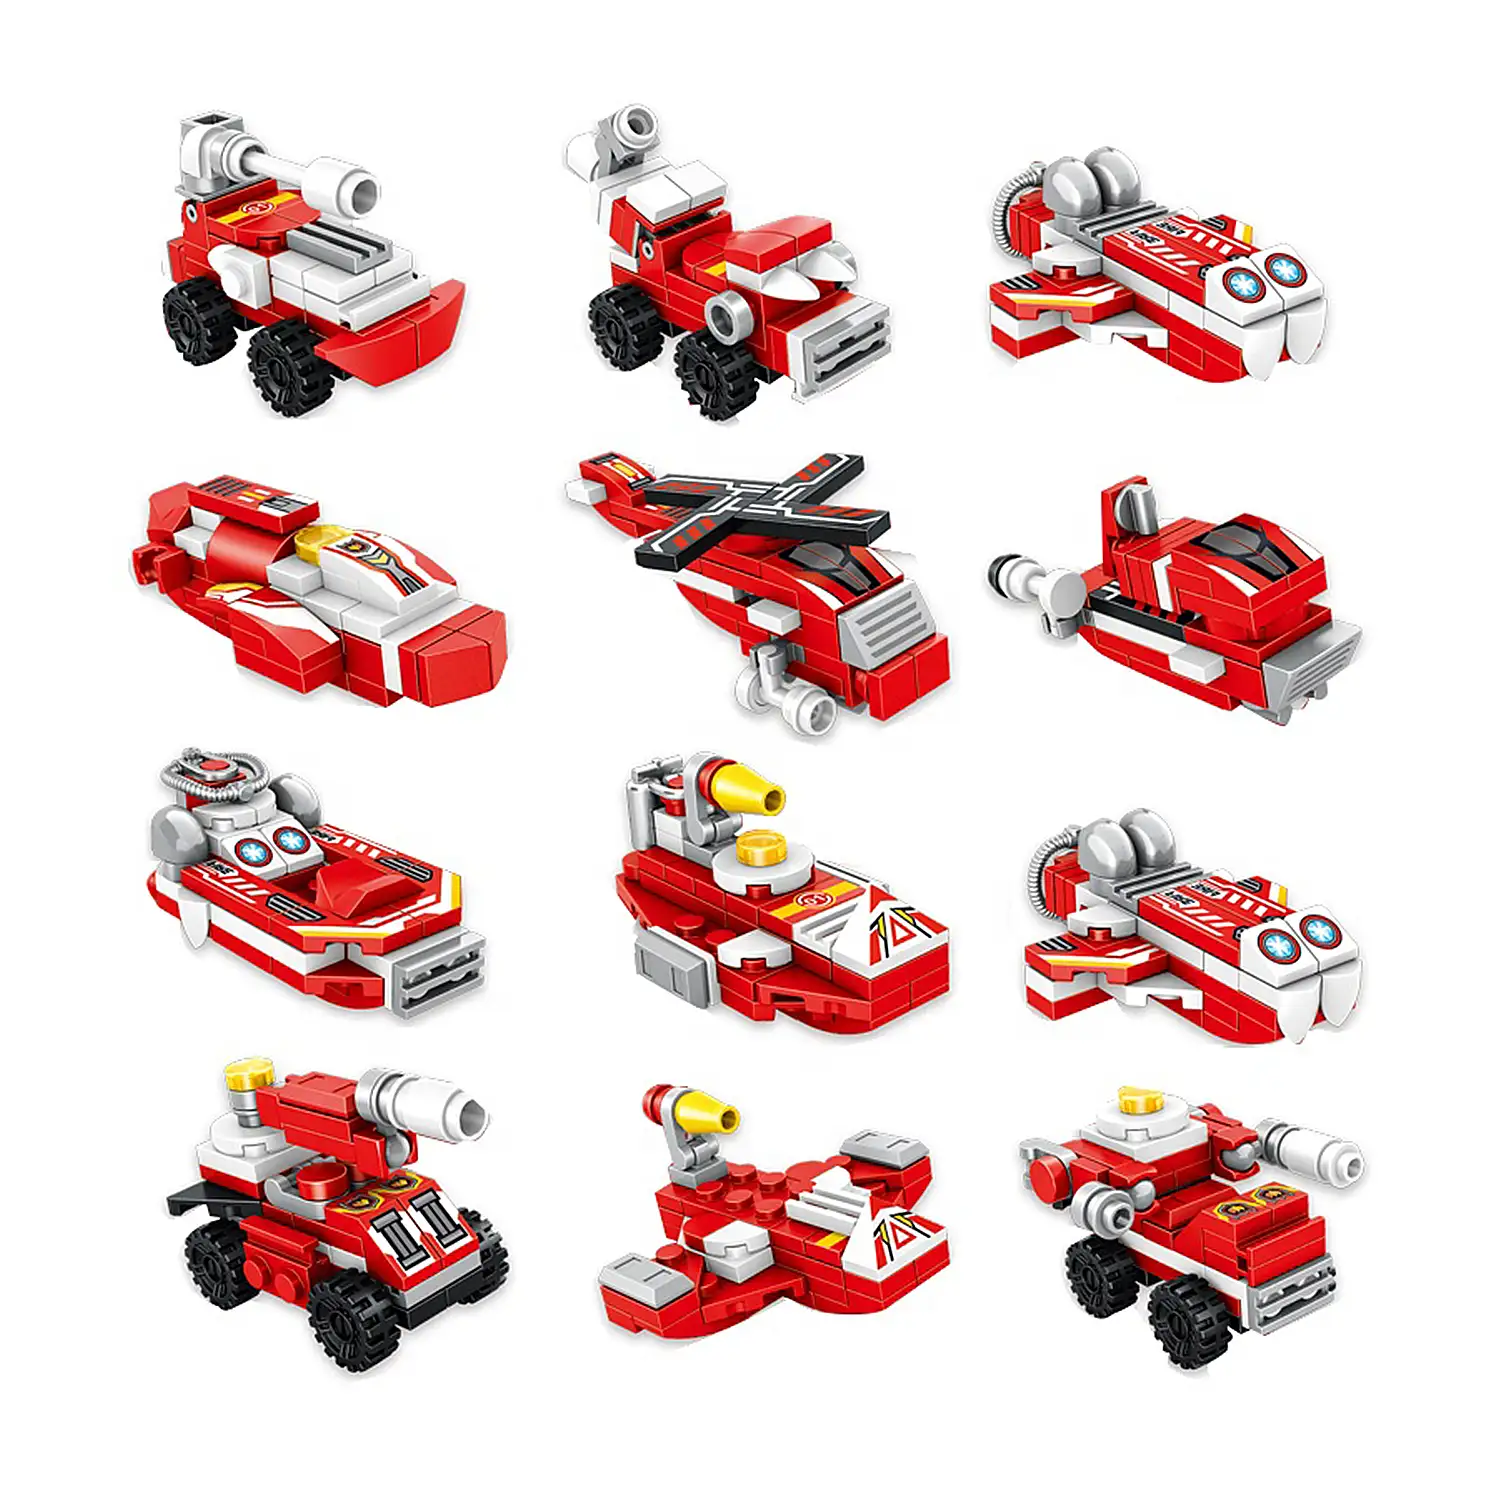 Robot de fuego 6 en 1, con 271 piezas. Construye 6 vehiculos de rescate individuales (con 2 formas cada uno), acopla y convierte en un robot.